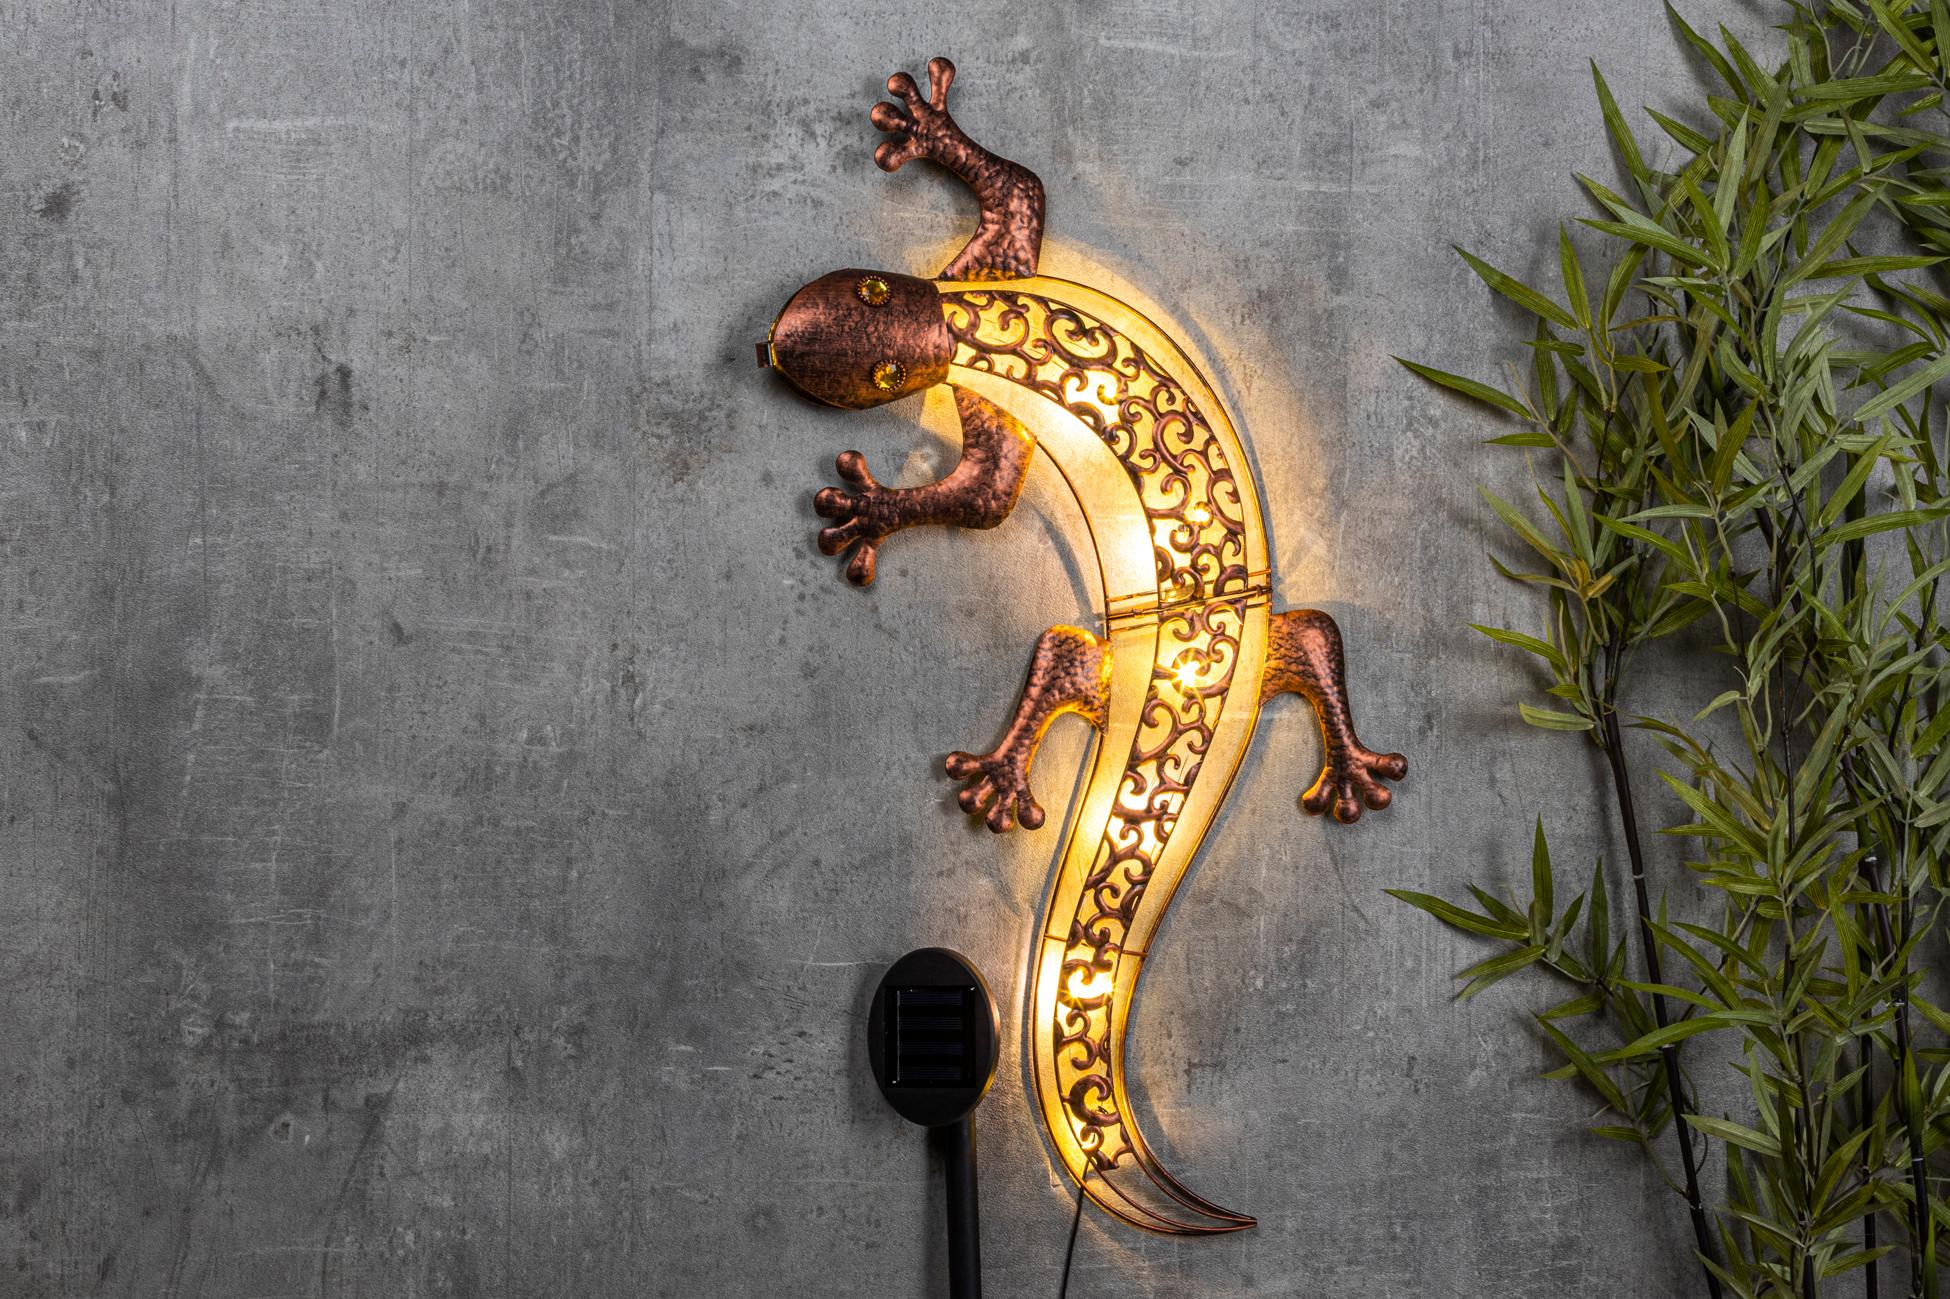 Solar wandlamp gekko  (69 x 36 x 3 cm)